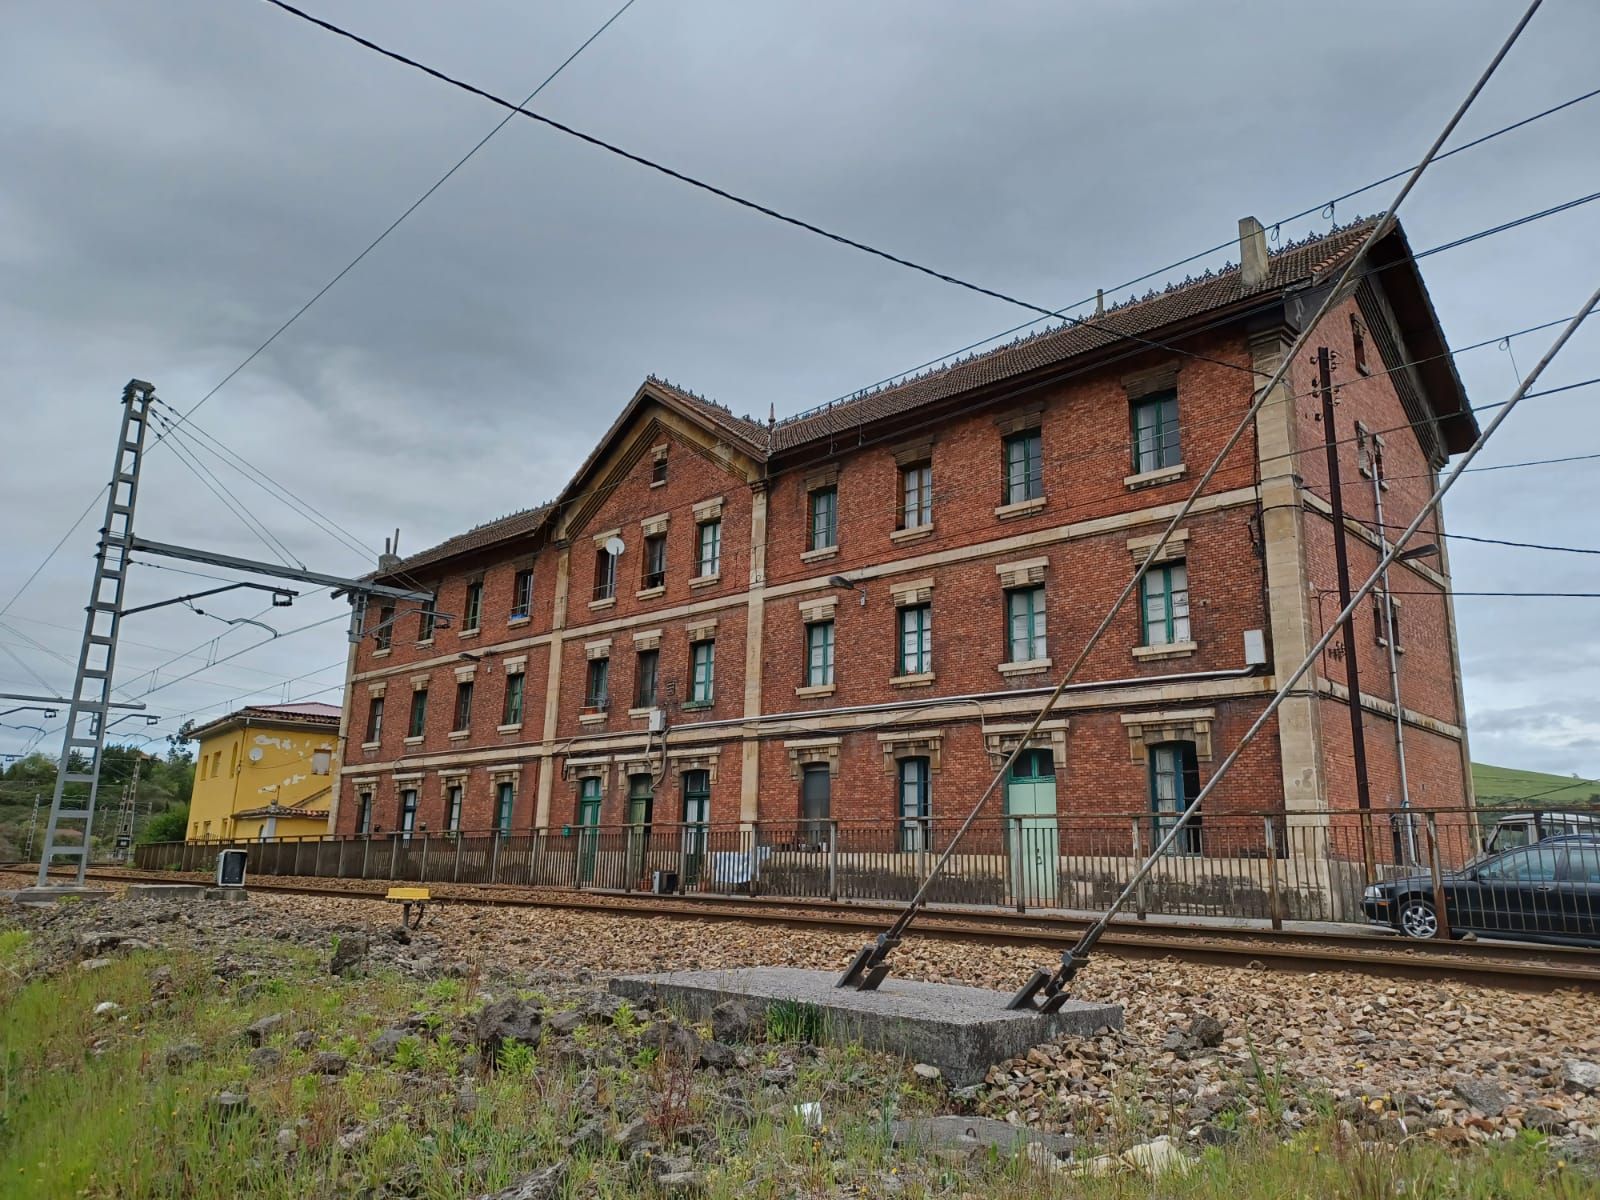 La estación "inglesa" de Villabona, única en Asturias, sigue su imparable deterioro: así es el singular conjunto ferroviario de Llanera